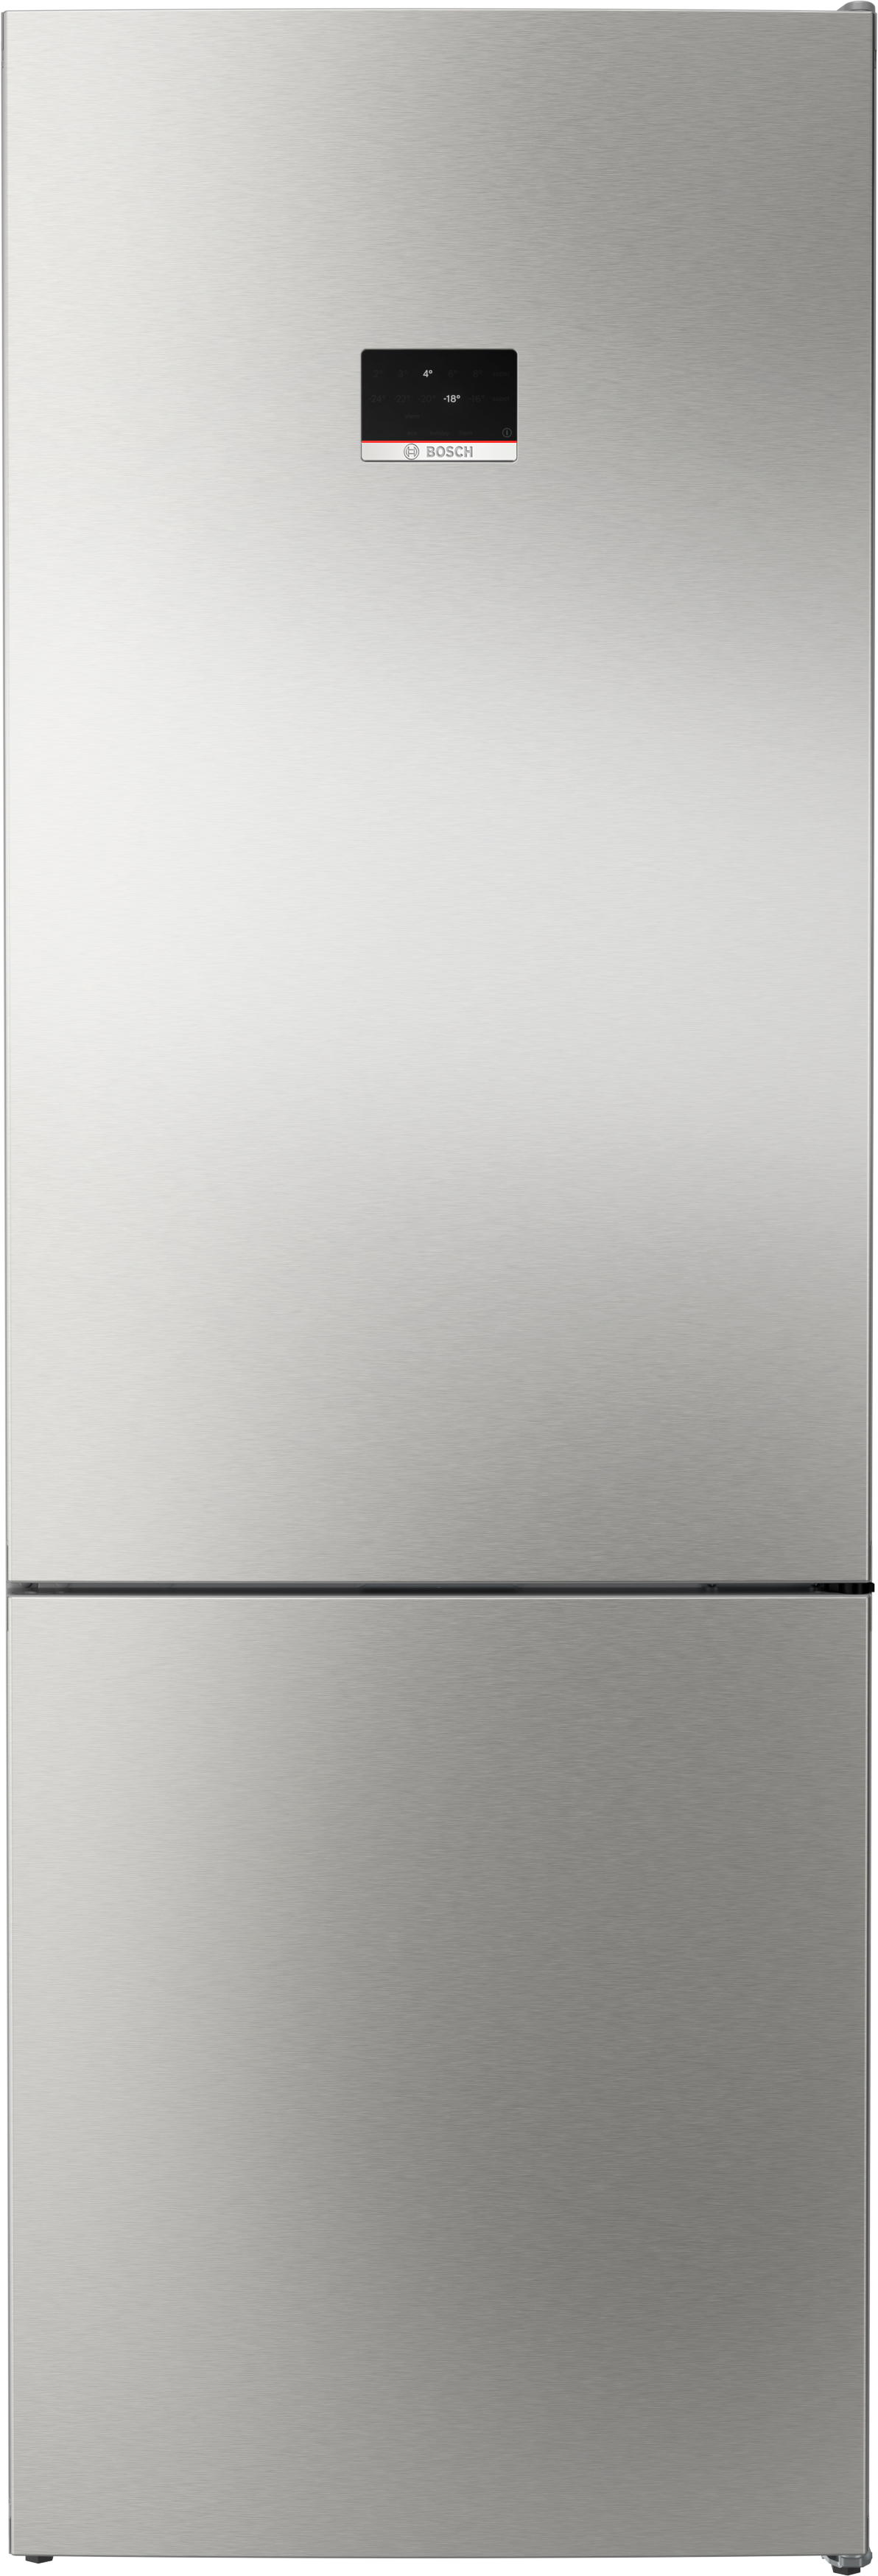 Отзывы холодильник Bosch KGN49XID0U в Украине